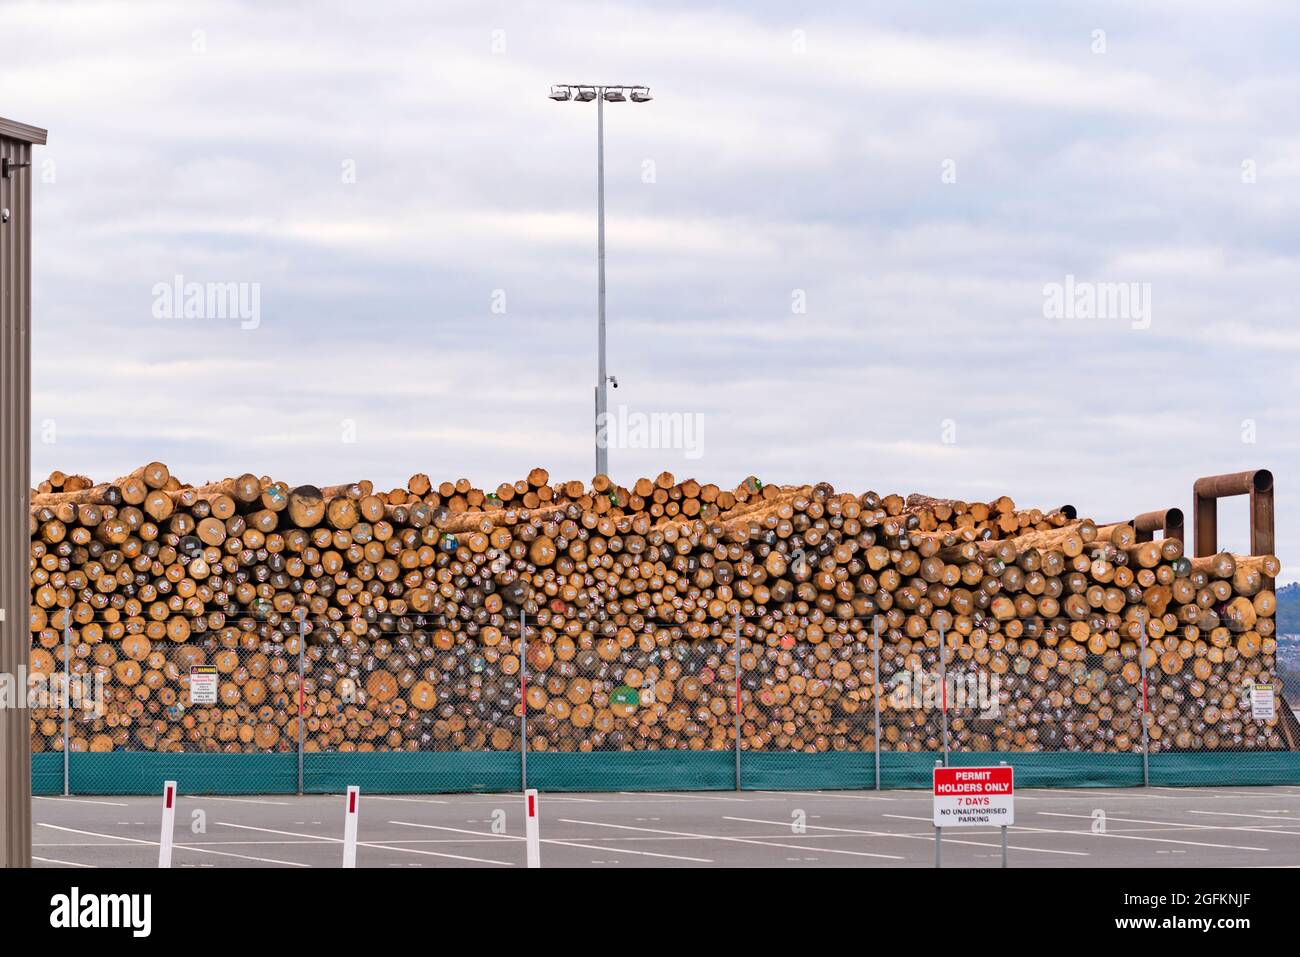 Bois de charpente provenant des forêts du sud de la Tasmanie, empilé en attente d'exportation à Macquarie Wharf sur la Derwent River à Hobart, Tasmanie, Australie Banque D'Images